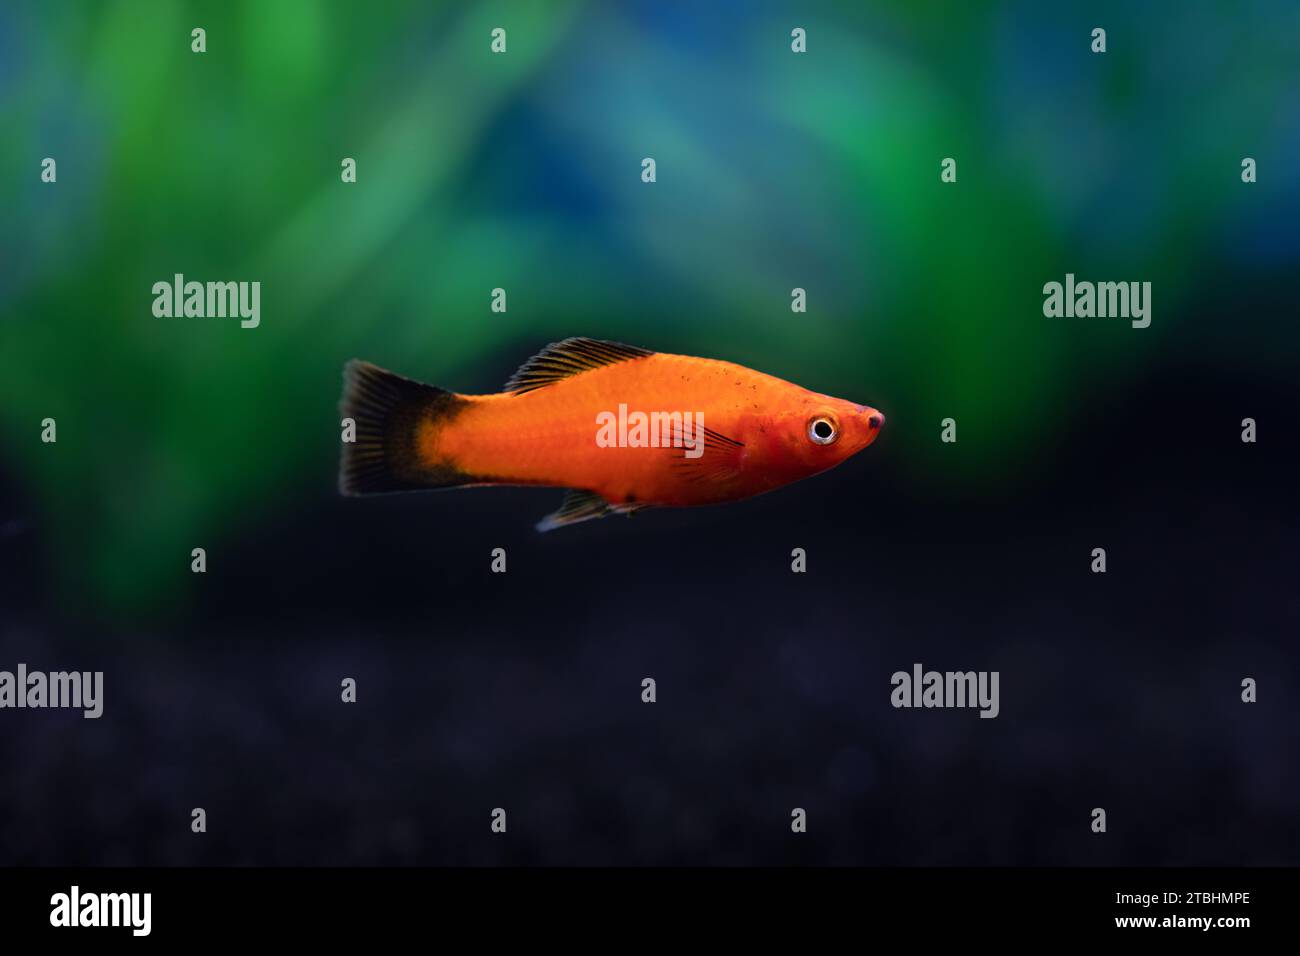 Closeup view of bright red orange Platy Fish in dark aquarium Stock Photo